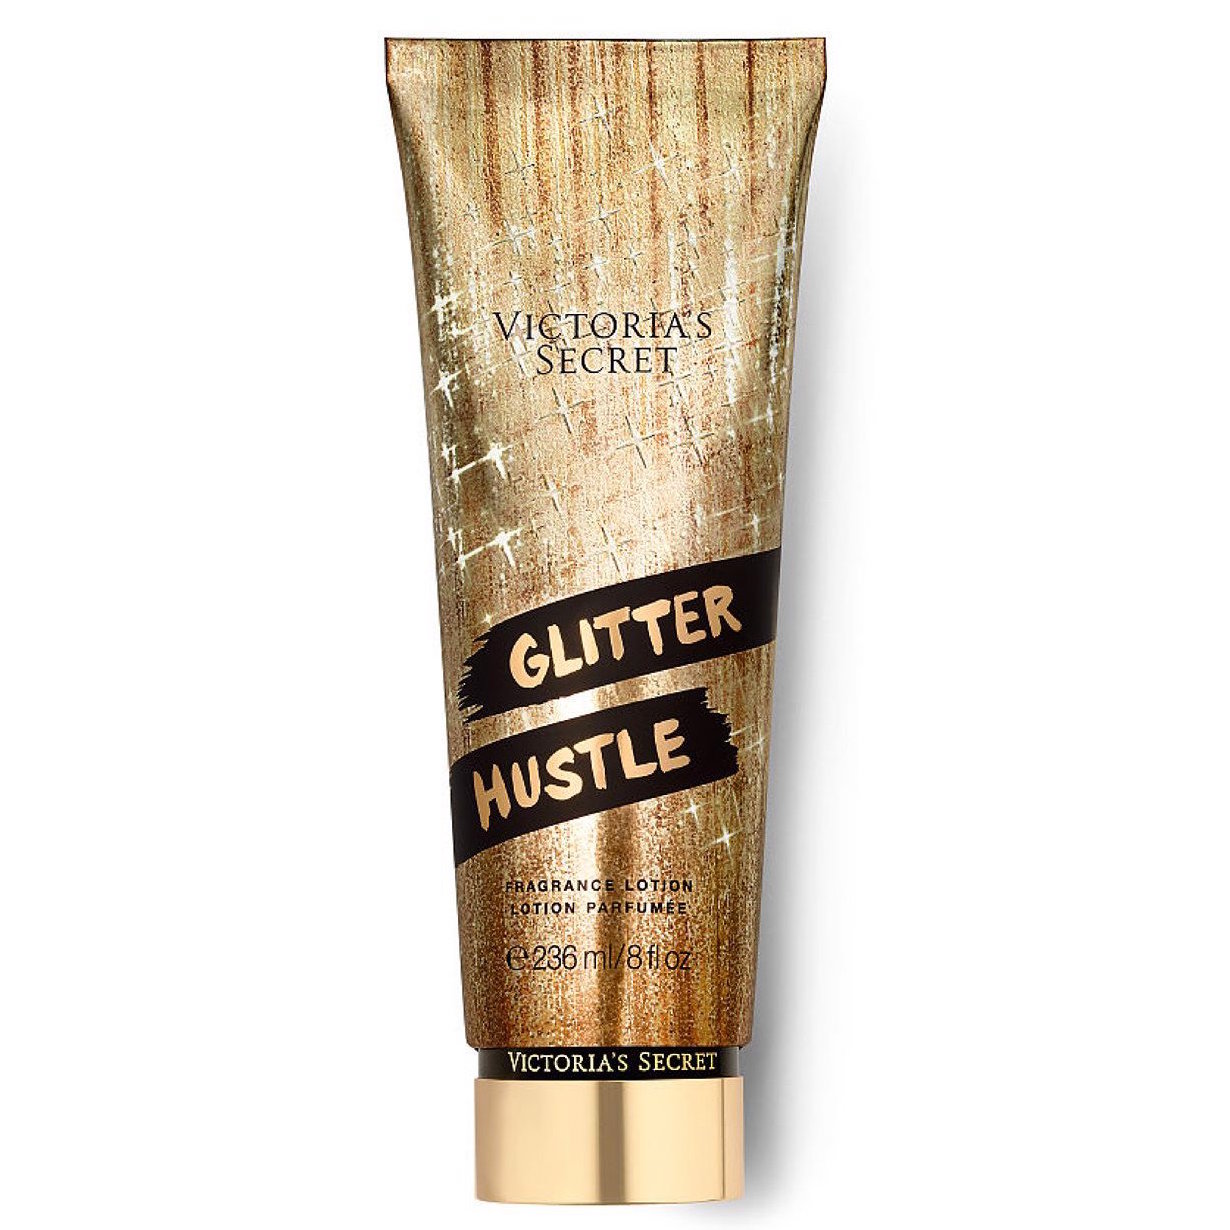 Glitter Hustle Fragrance Lotion